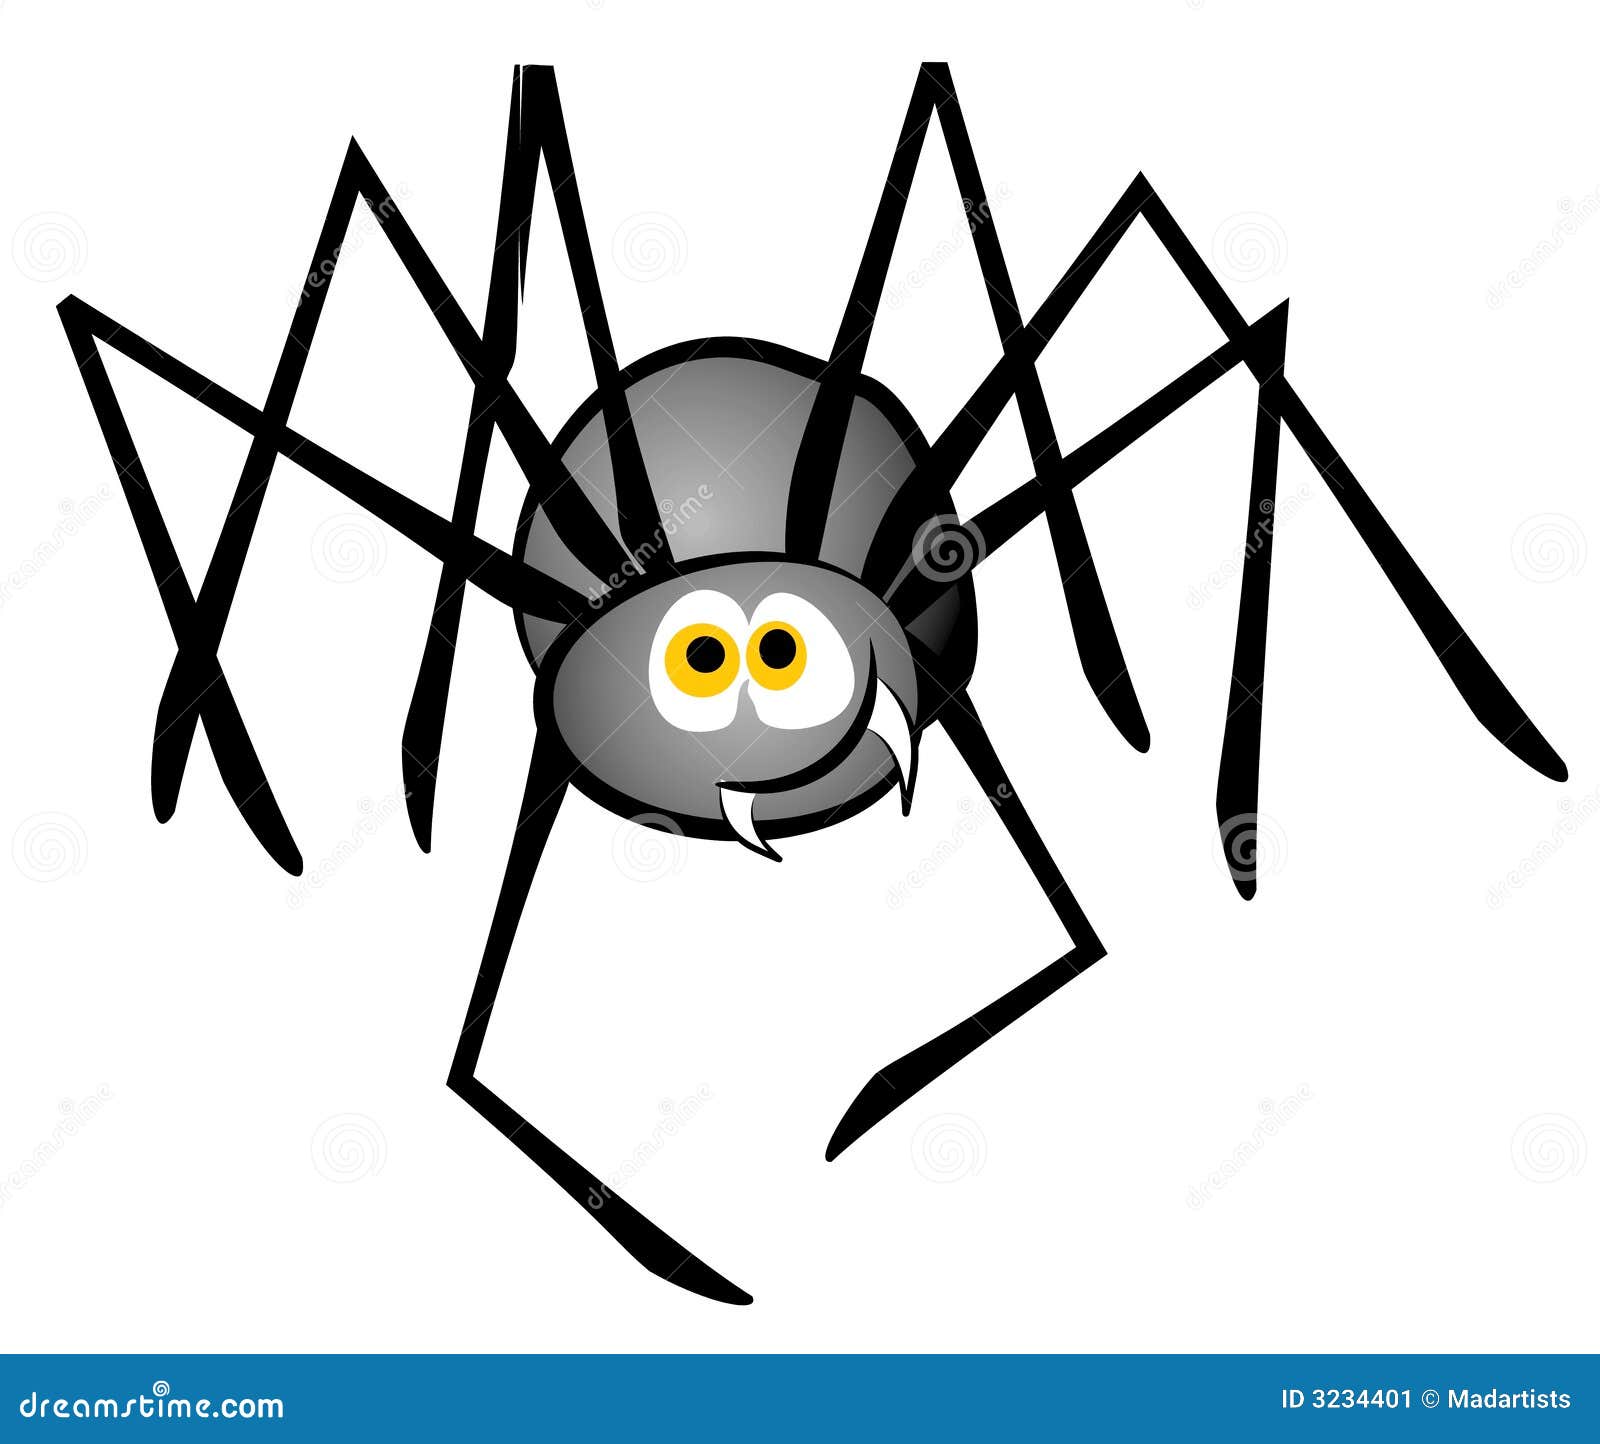 cartoon-spider-clip-art-3234401.jpg